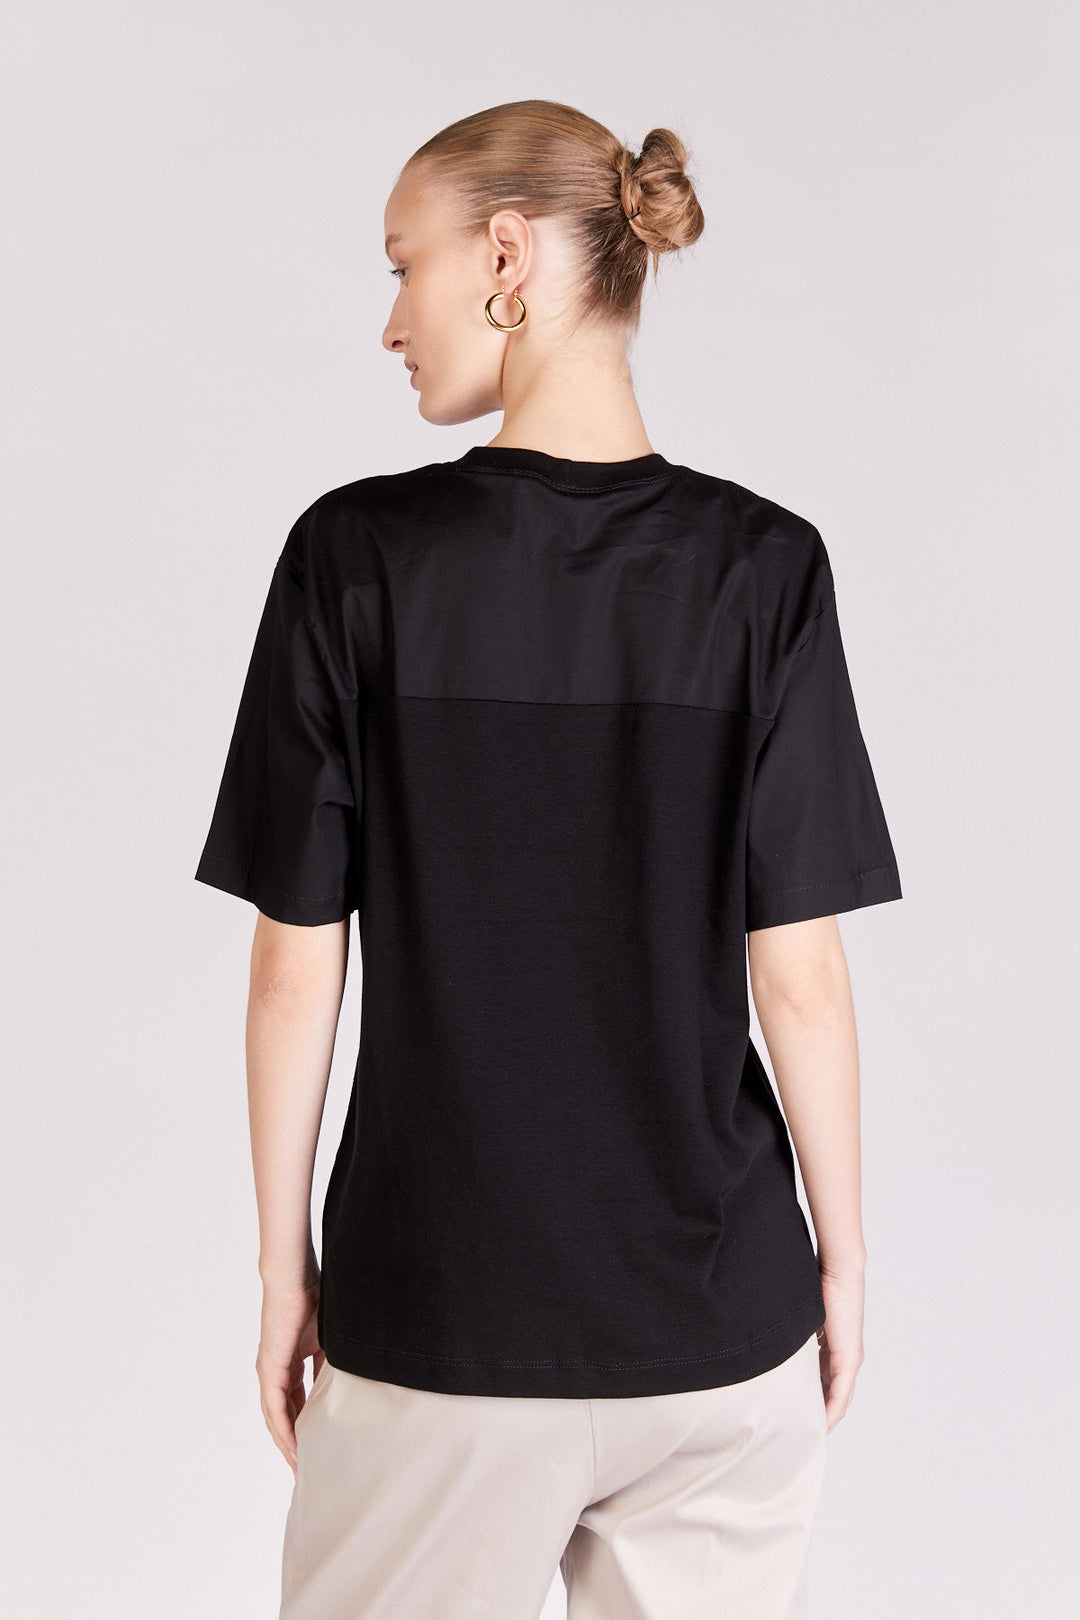 חולצת סייג' בצבע שחור - Razili Studio